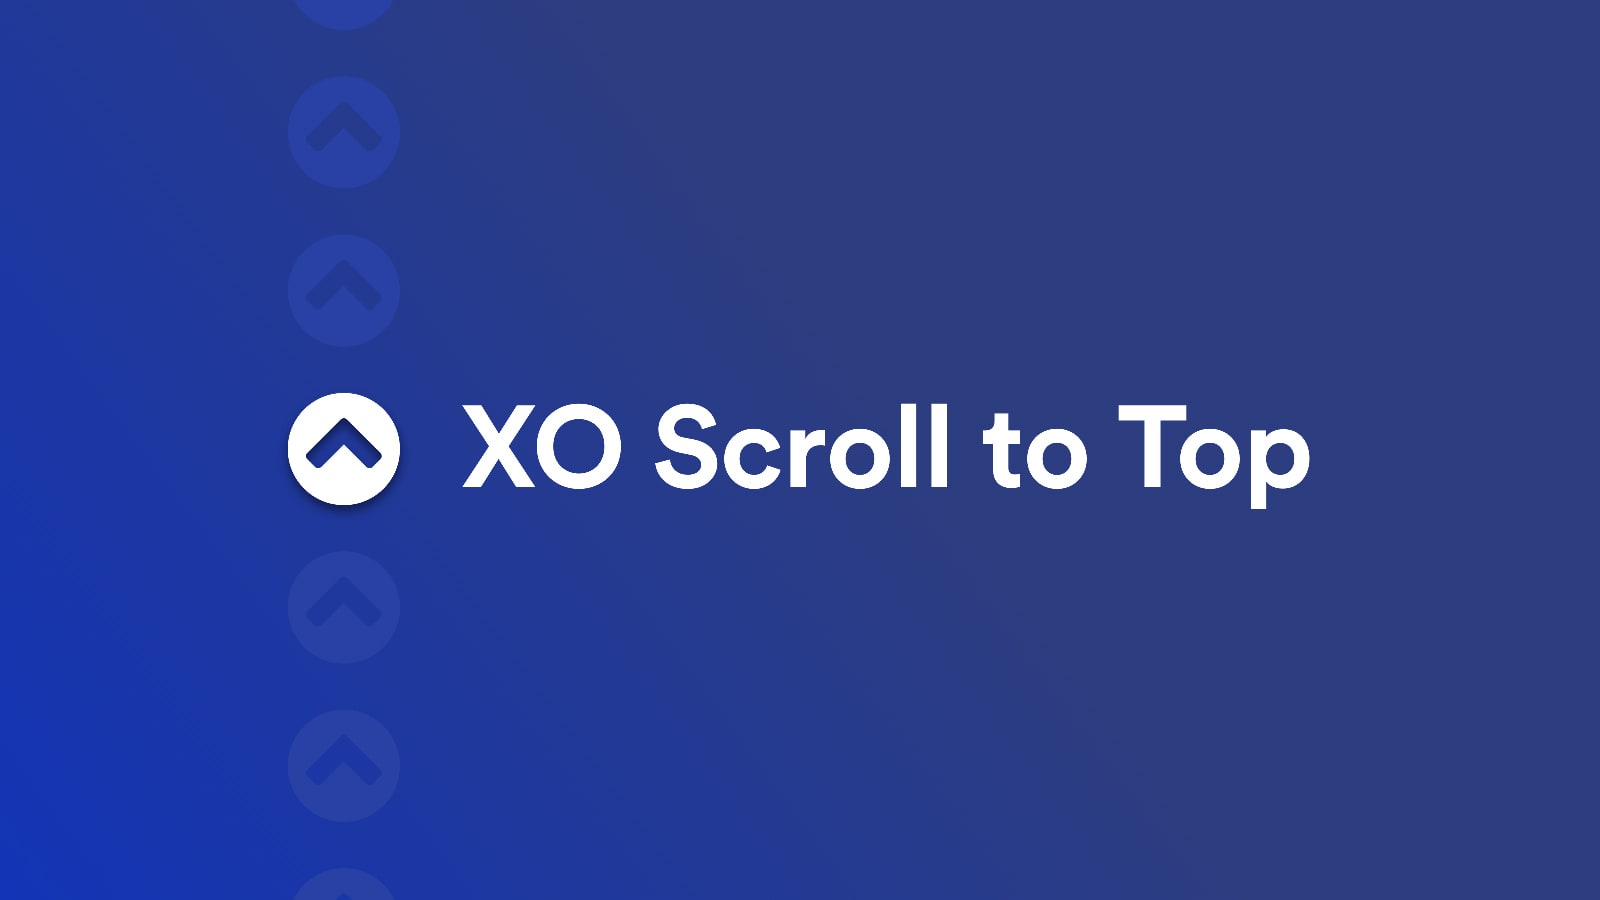 XO Scroll to top